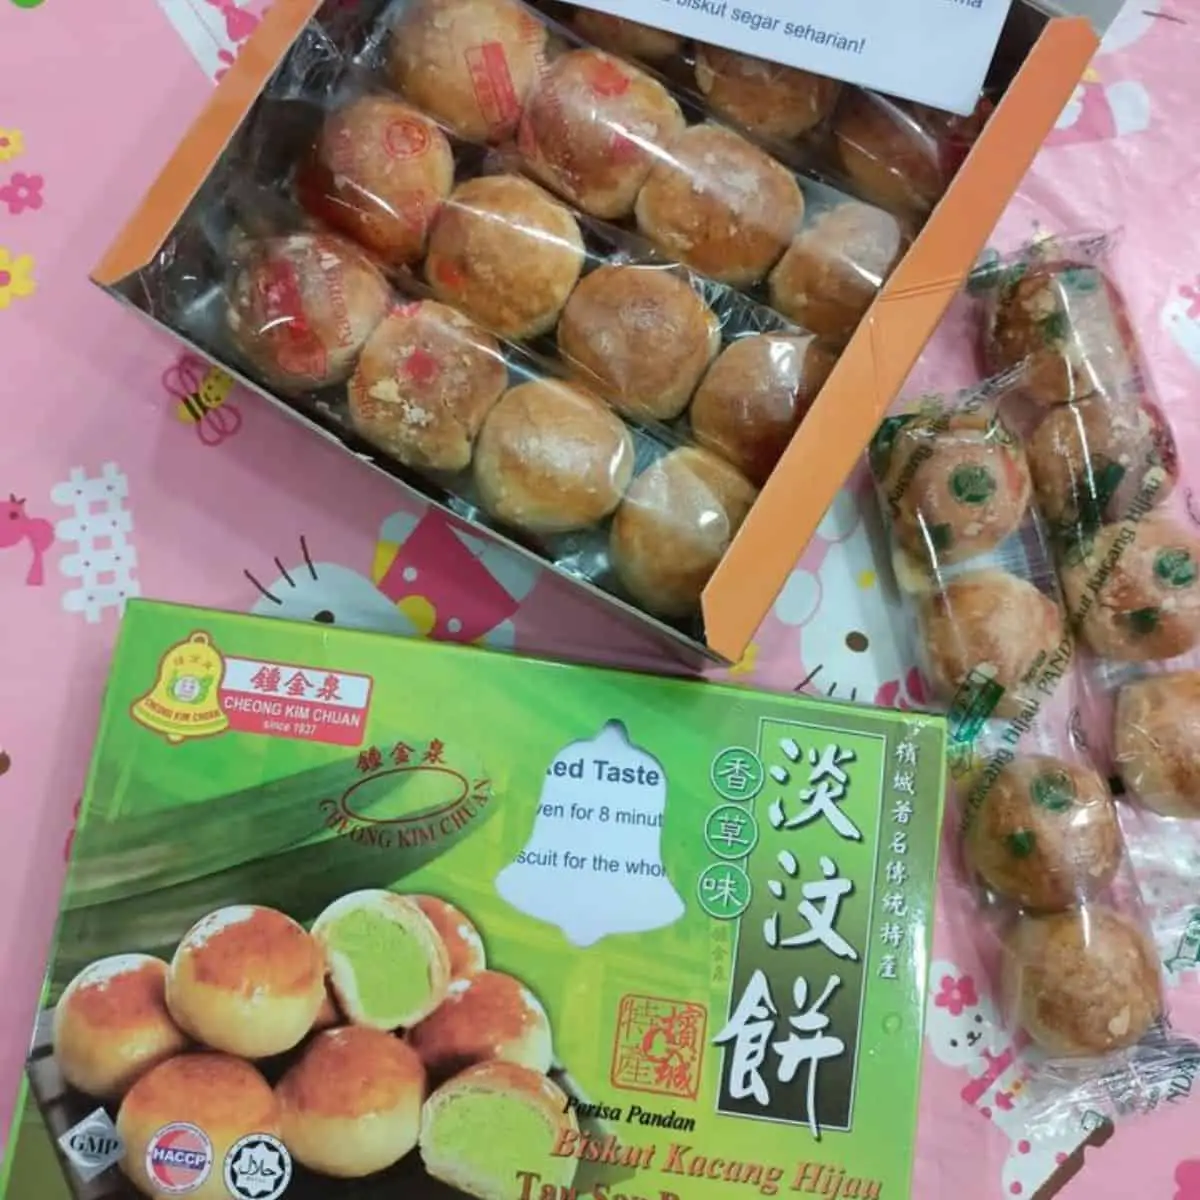 Cheong Kim Chuan’s Tau Sar Piah pandan flavour in a green box